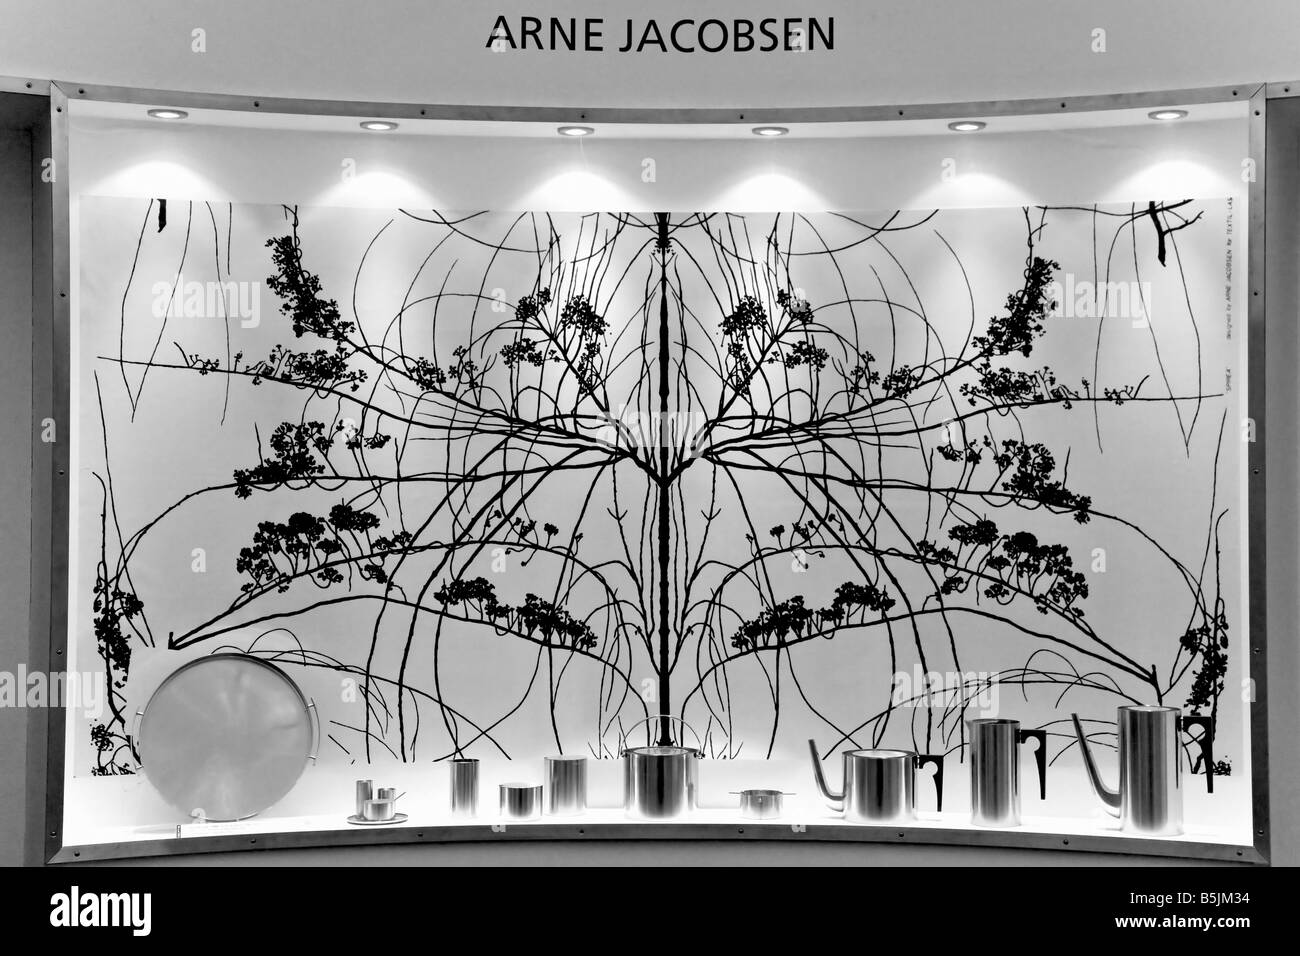 Arne Jacobsens affichage de l'équipement de cuisine inox Banque D'Images